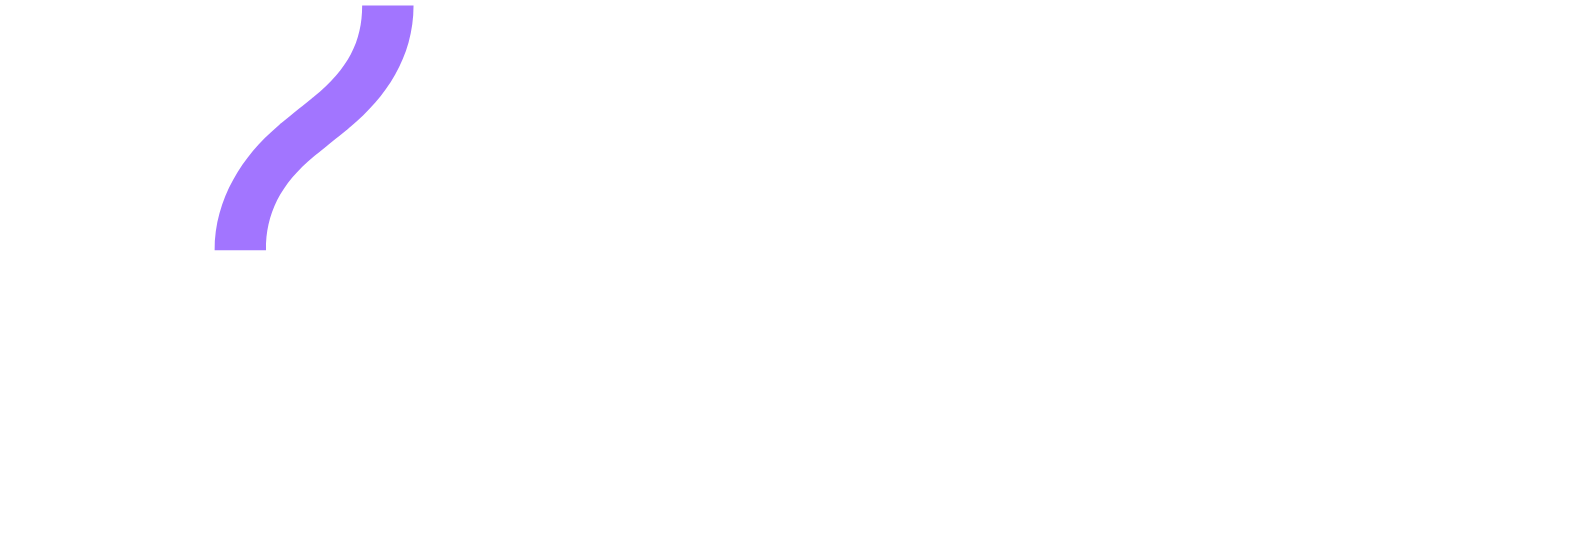 Exact Sciences logo grand pour les fonds sombres (PNG transparent)